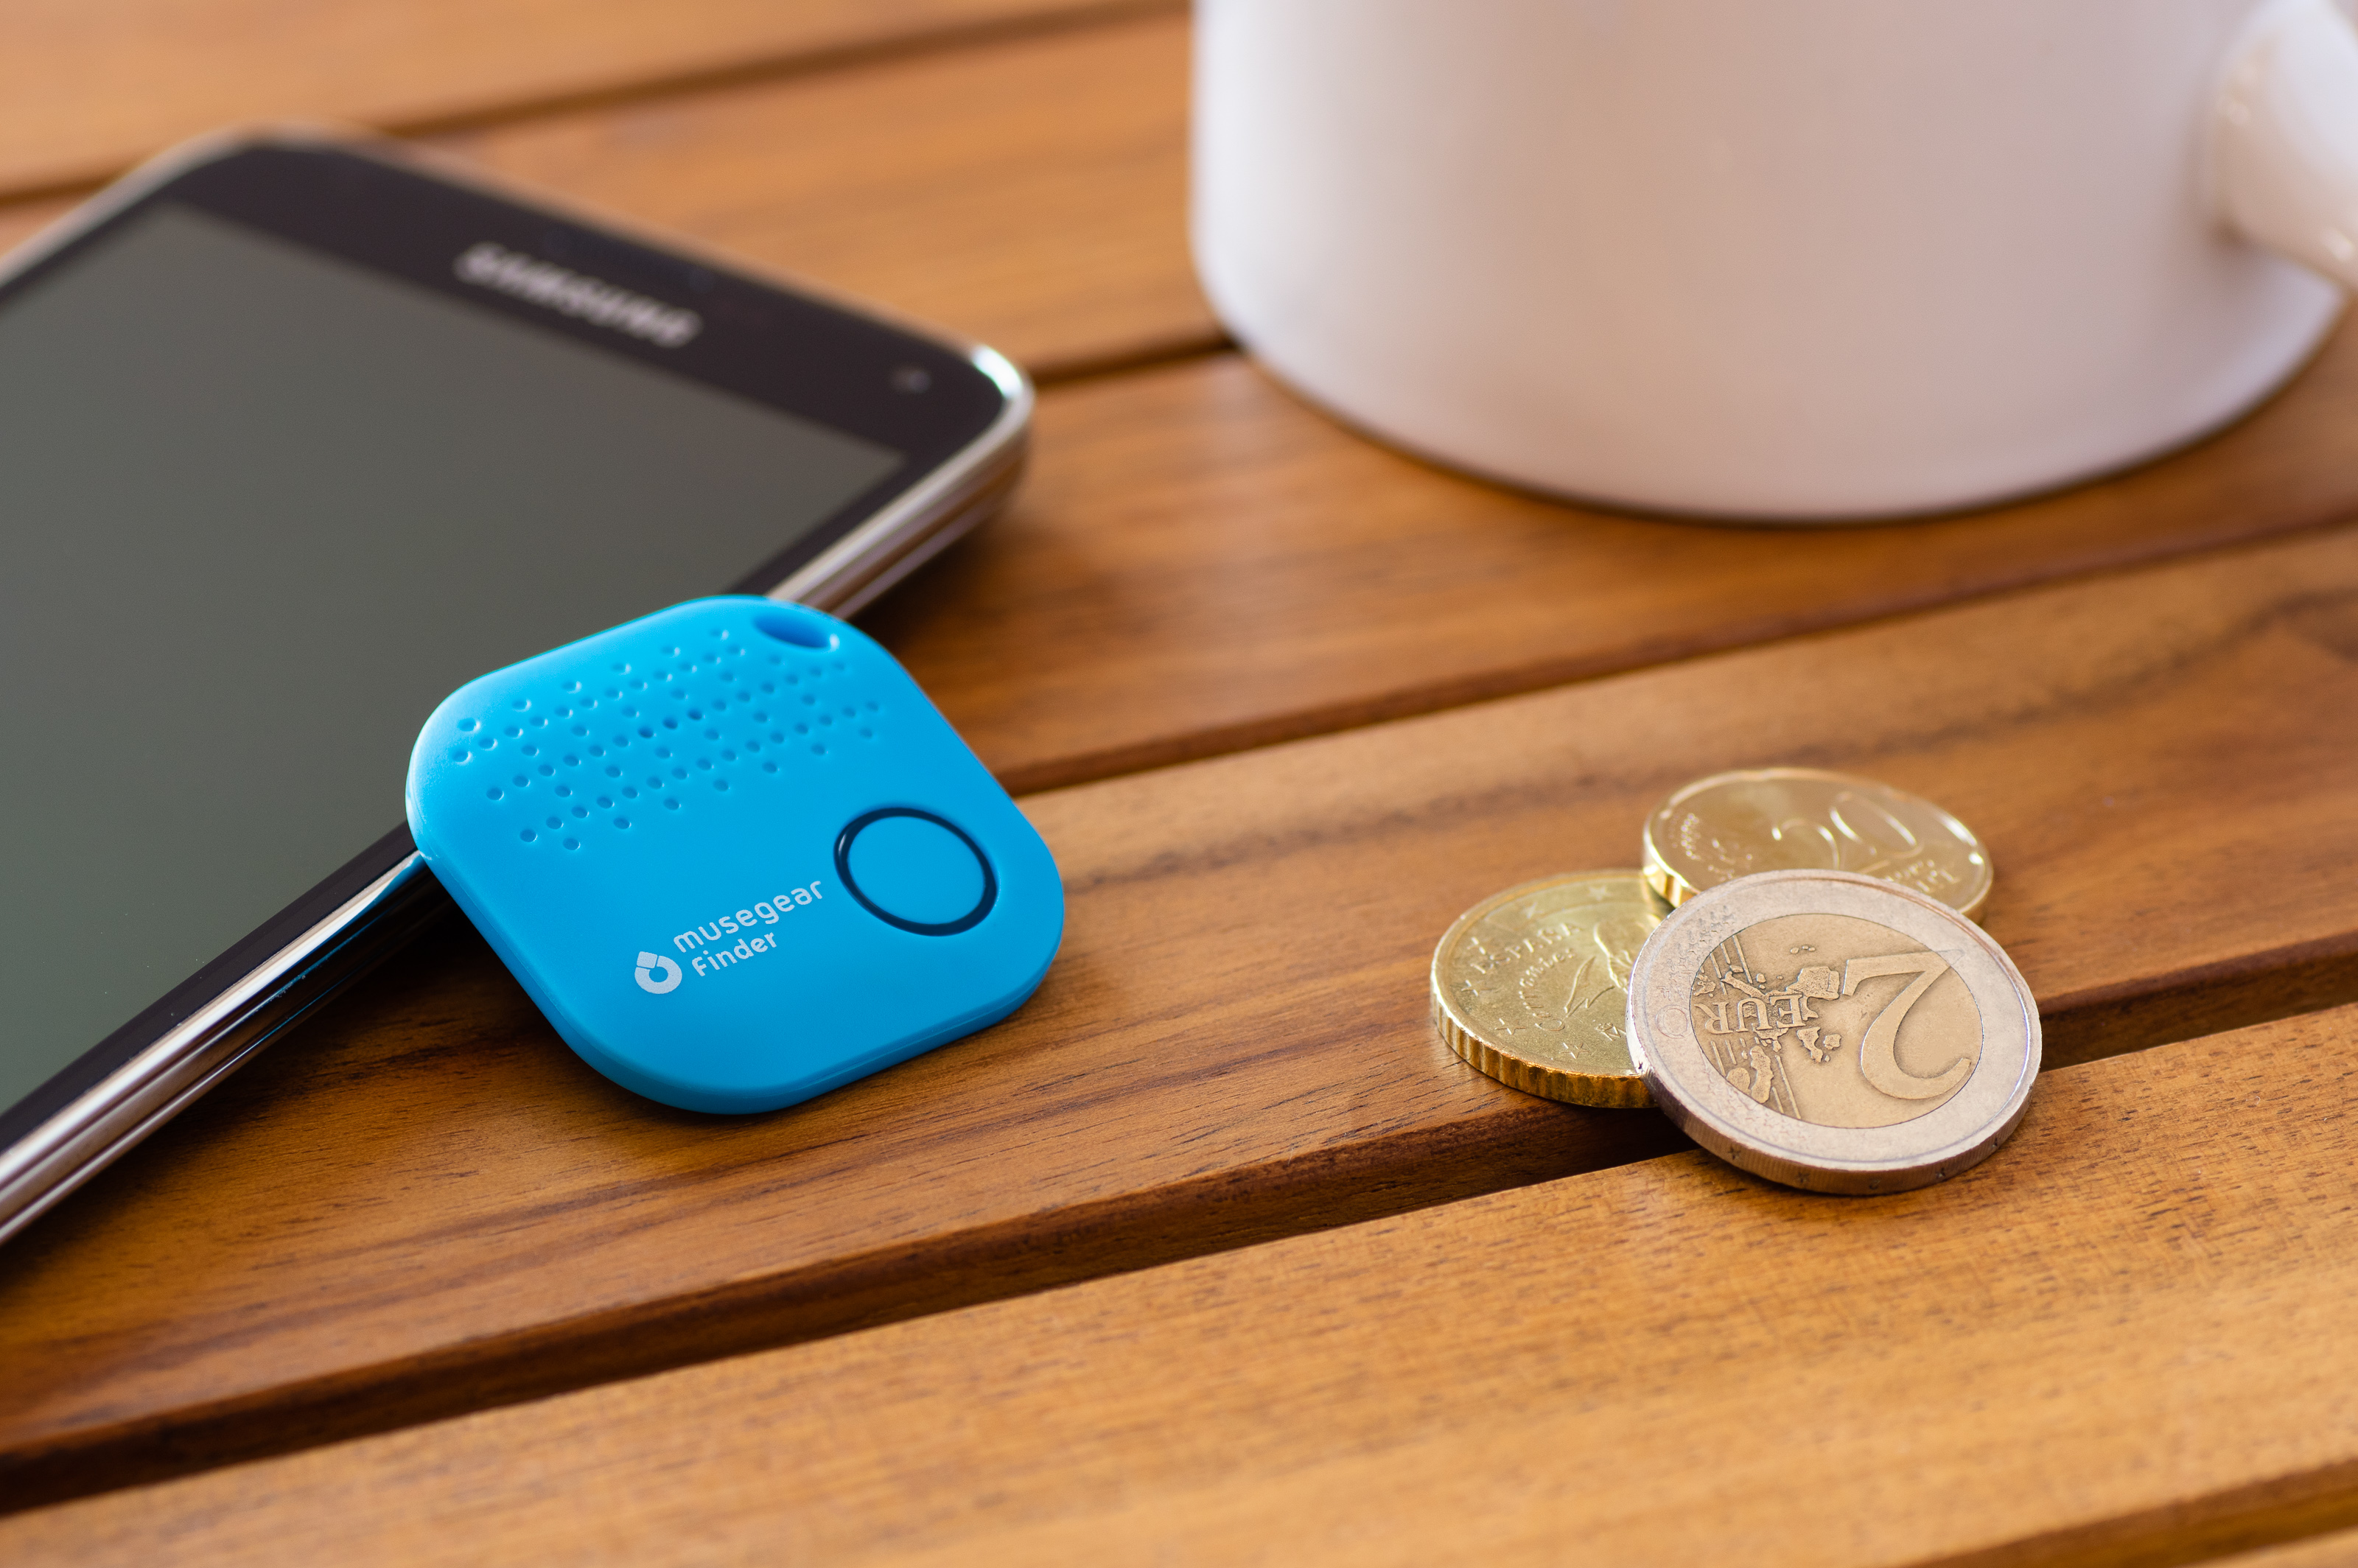 Bluetooth Deutschland App Bluetooth aus Schlüsselfinder mit MUSEGEAR Schlüsselfinder